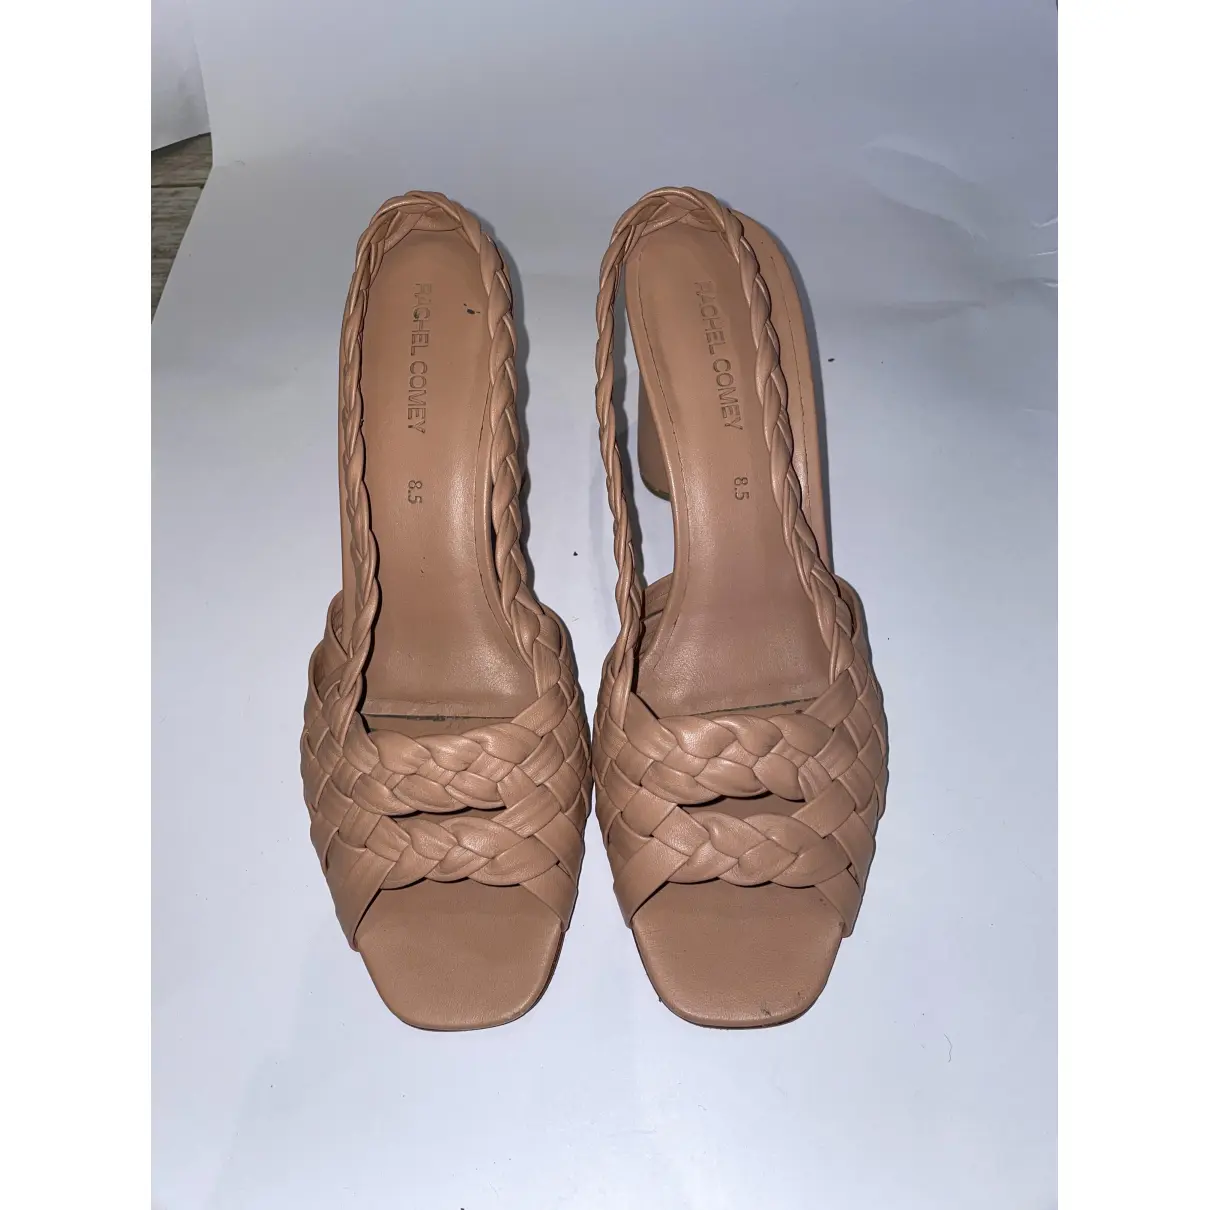 Buy Rachel Comey Leather sandals online